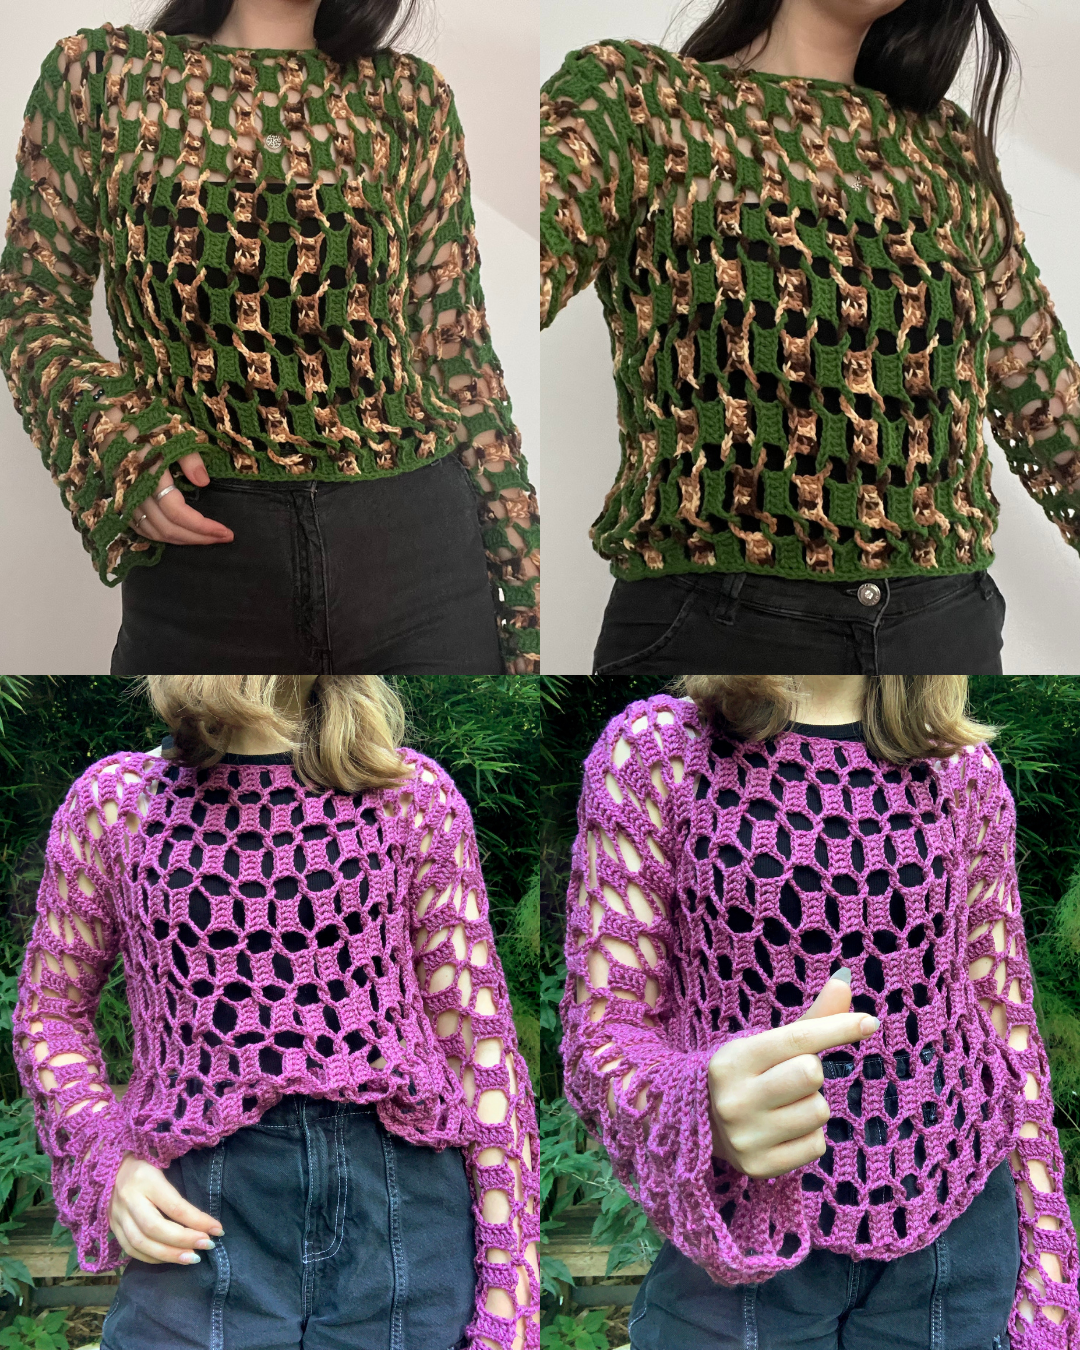 Interlock Top Crochet Pattern